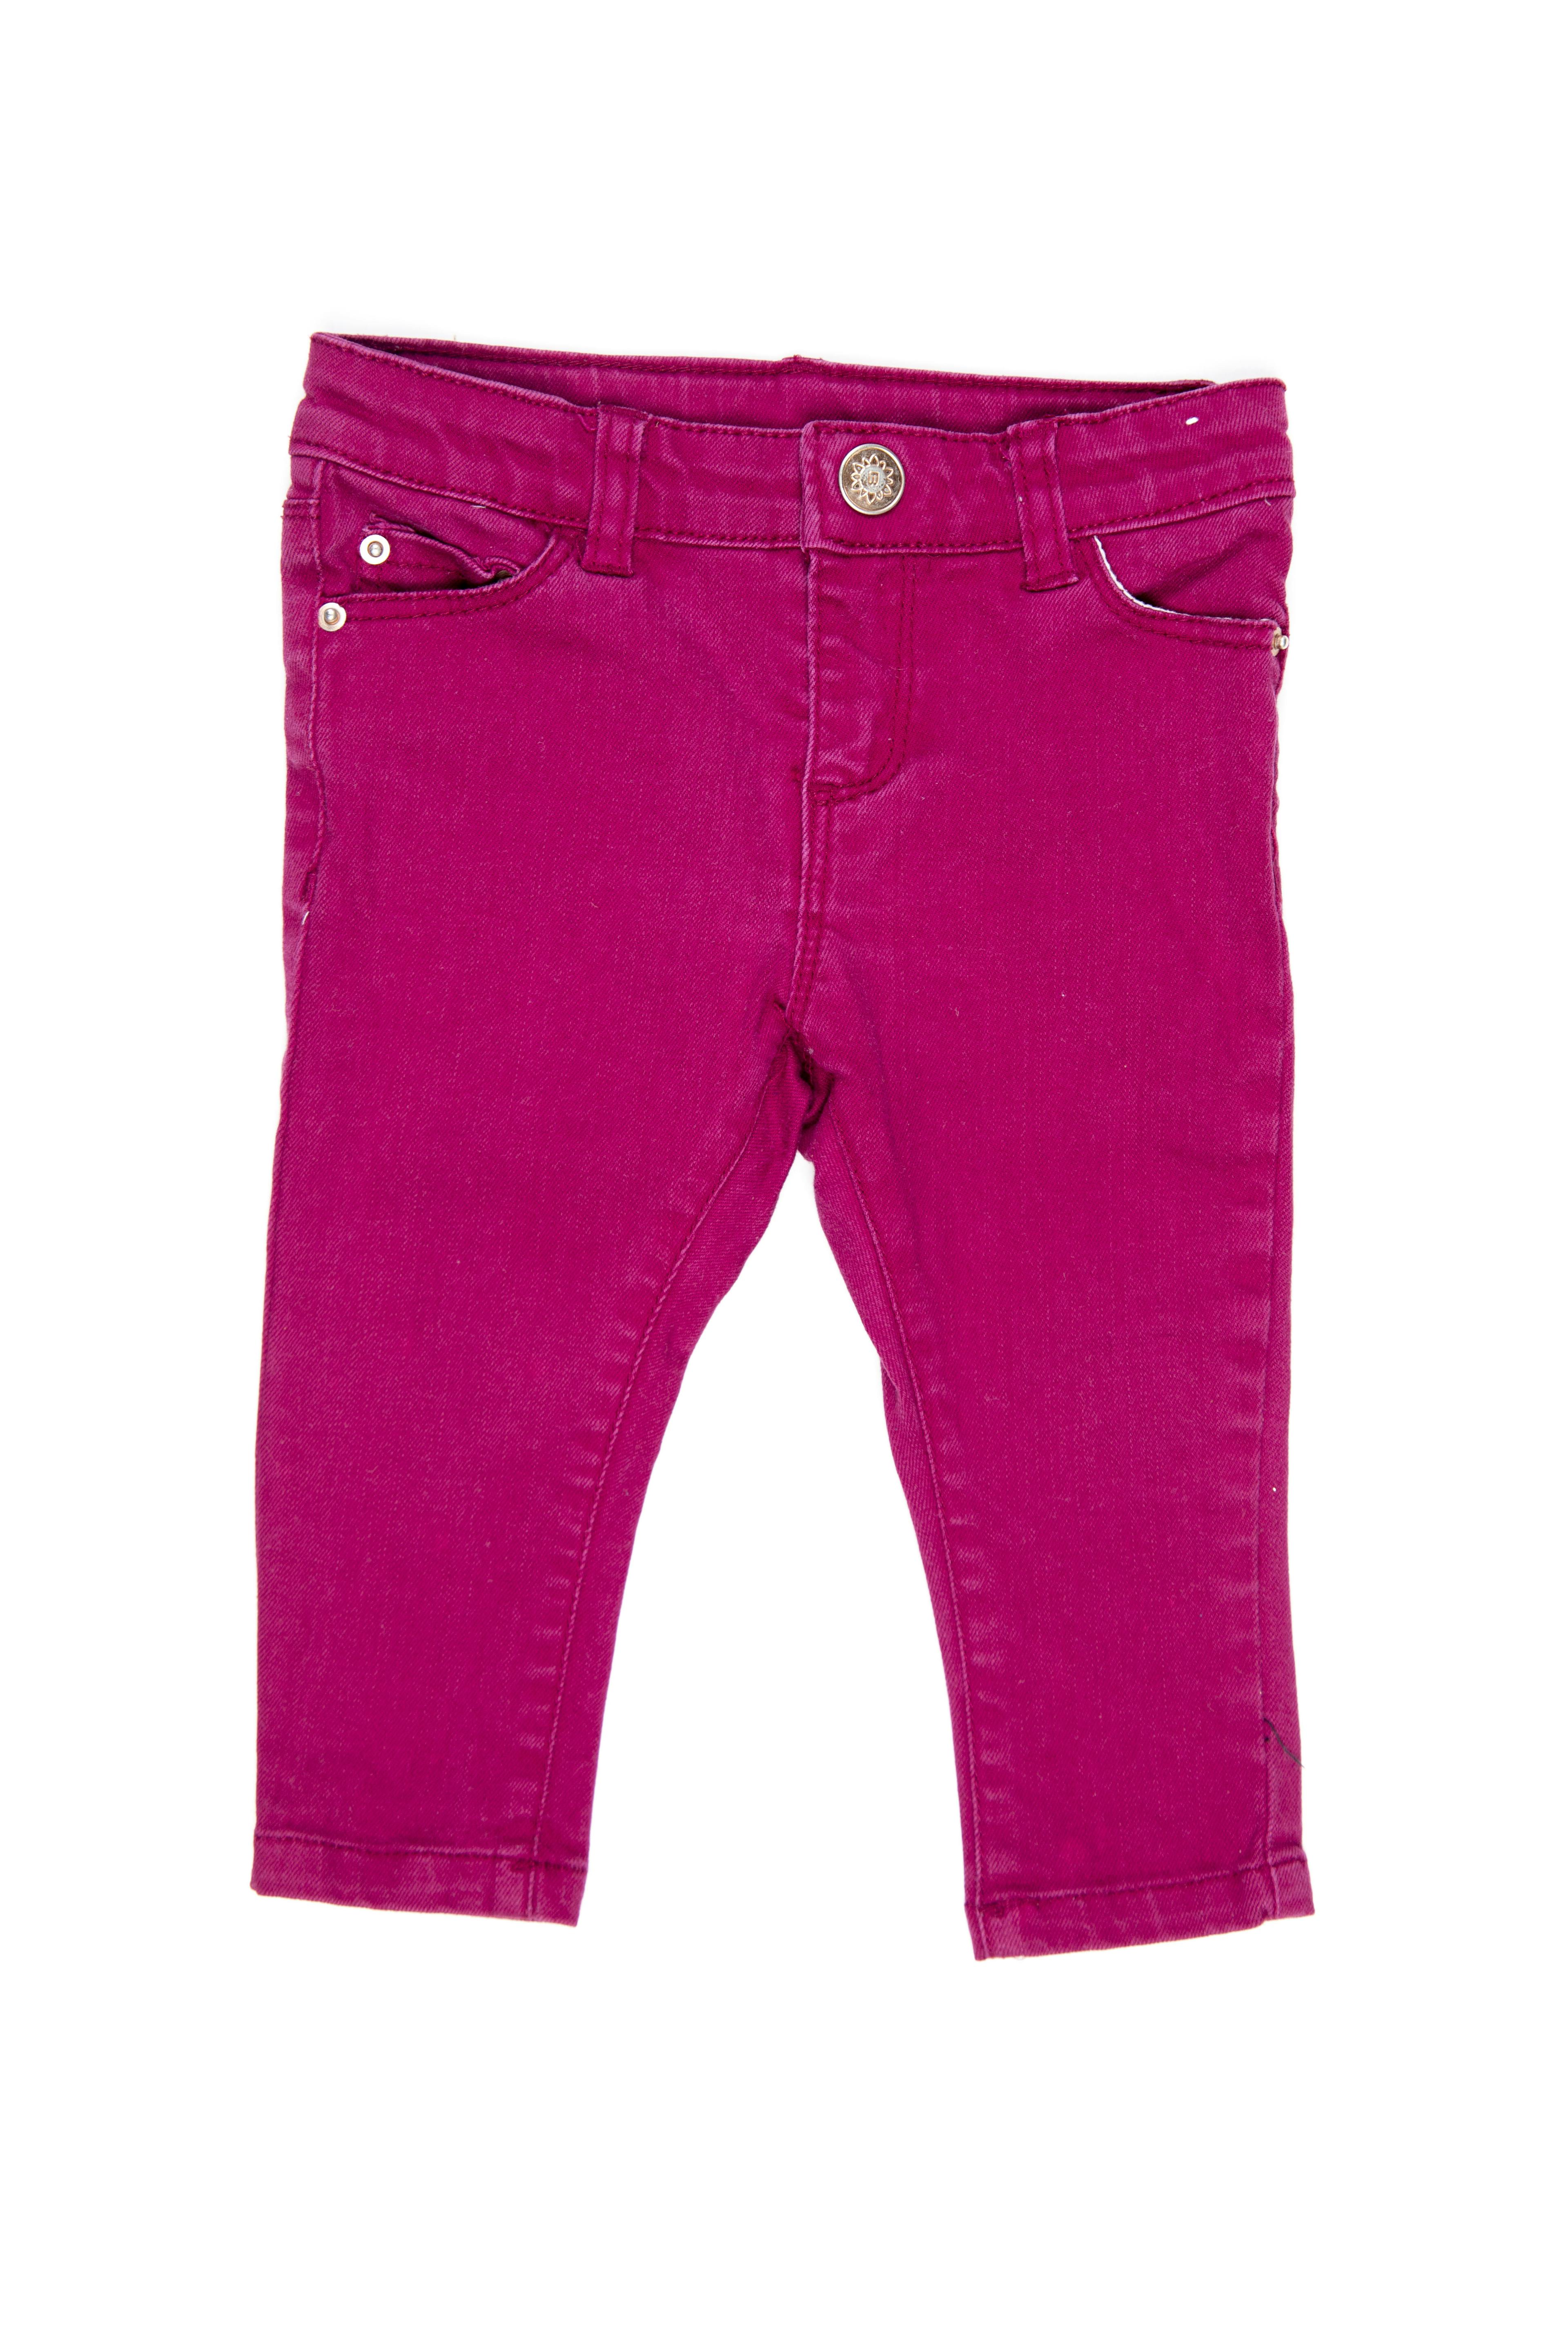 pantalón morado tipo jean 97% algodón - yamp